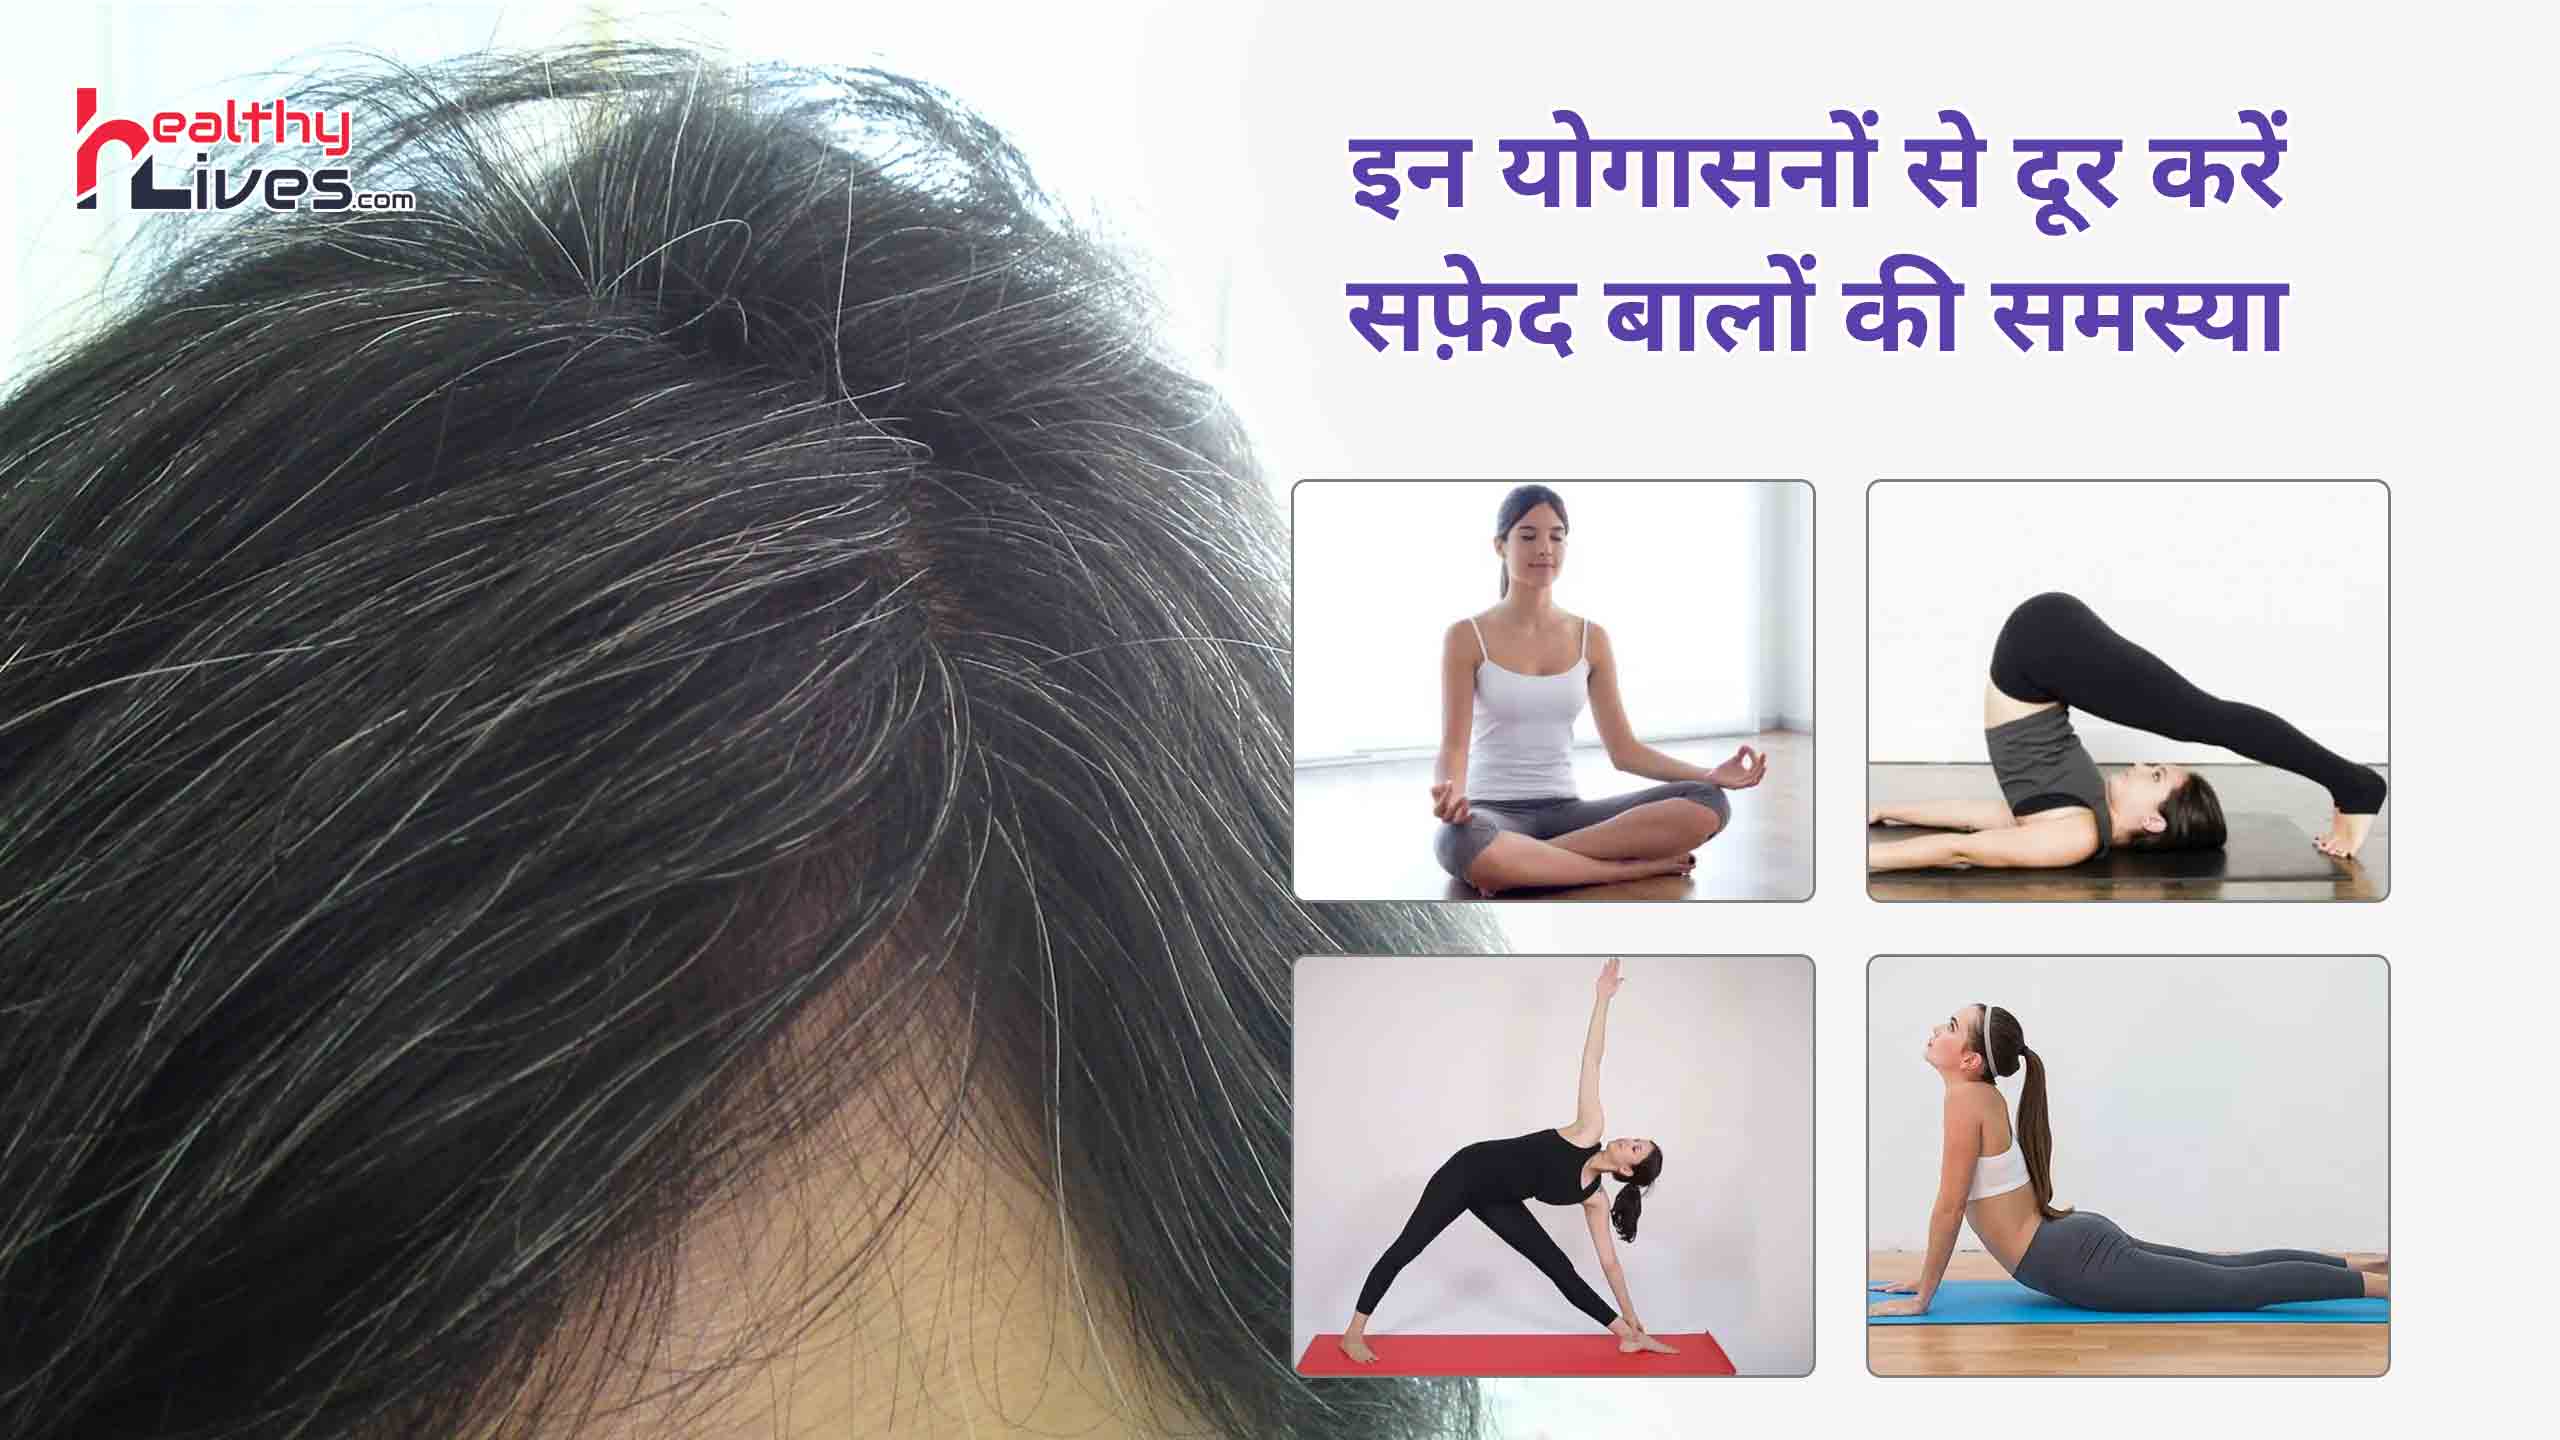 Yoga For White Hair To Black: असमय सफ़ेद होते बालों को योग द्वारा पुनः दें प्राकृतिक लुक